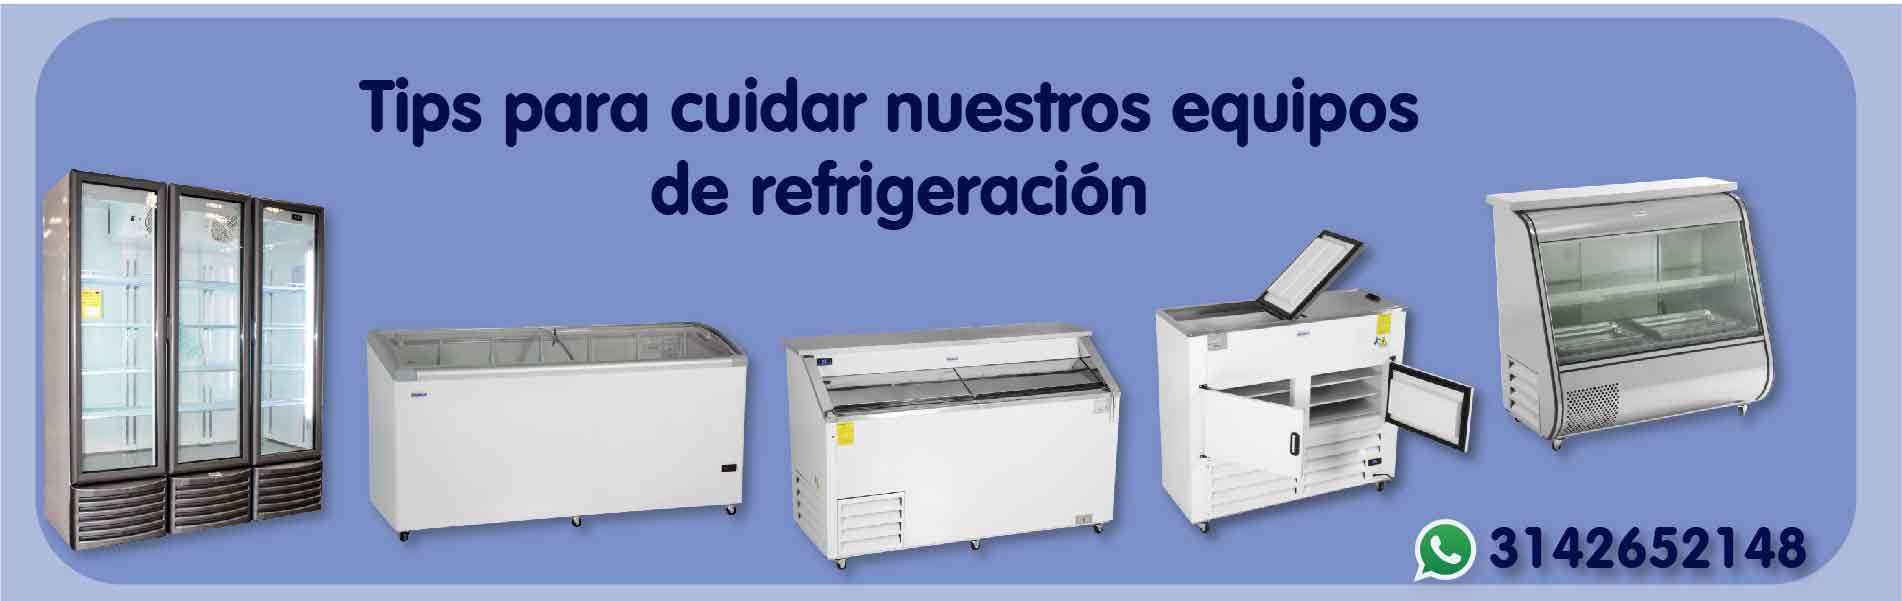 Tips cuidado equipos de refrigeración 3142652148